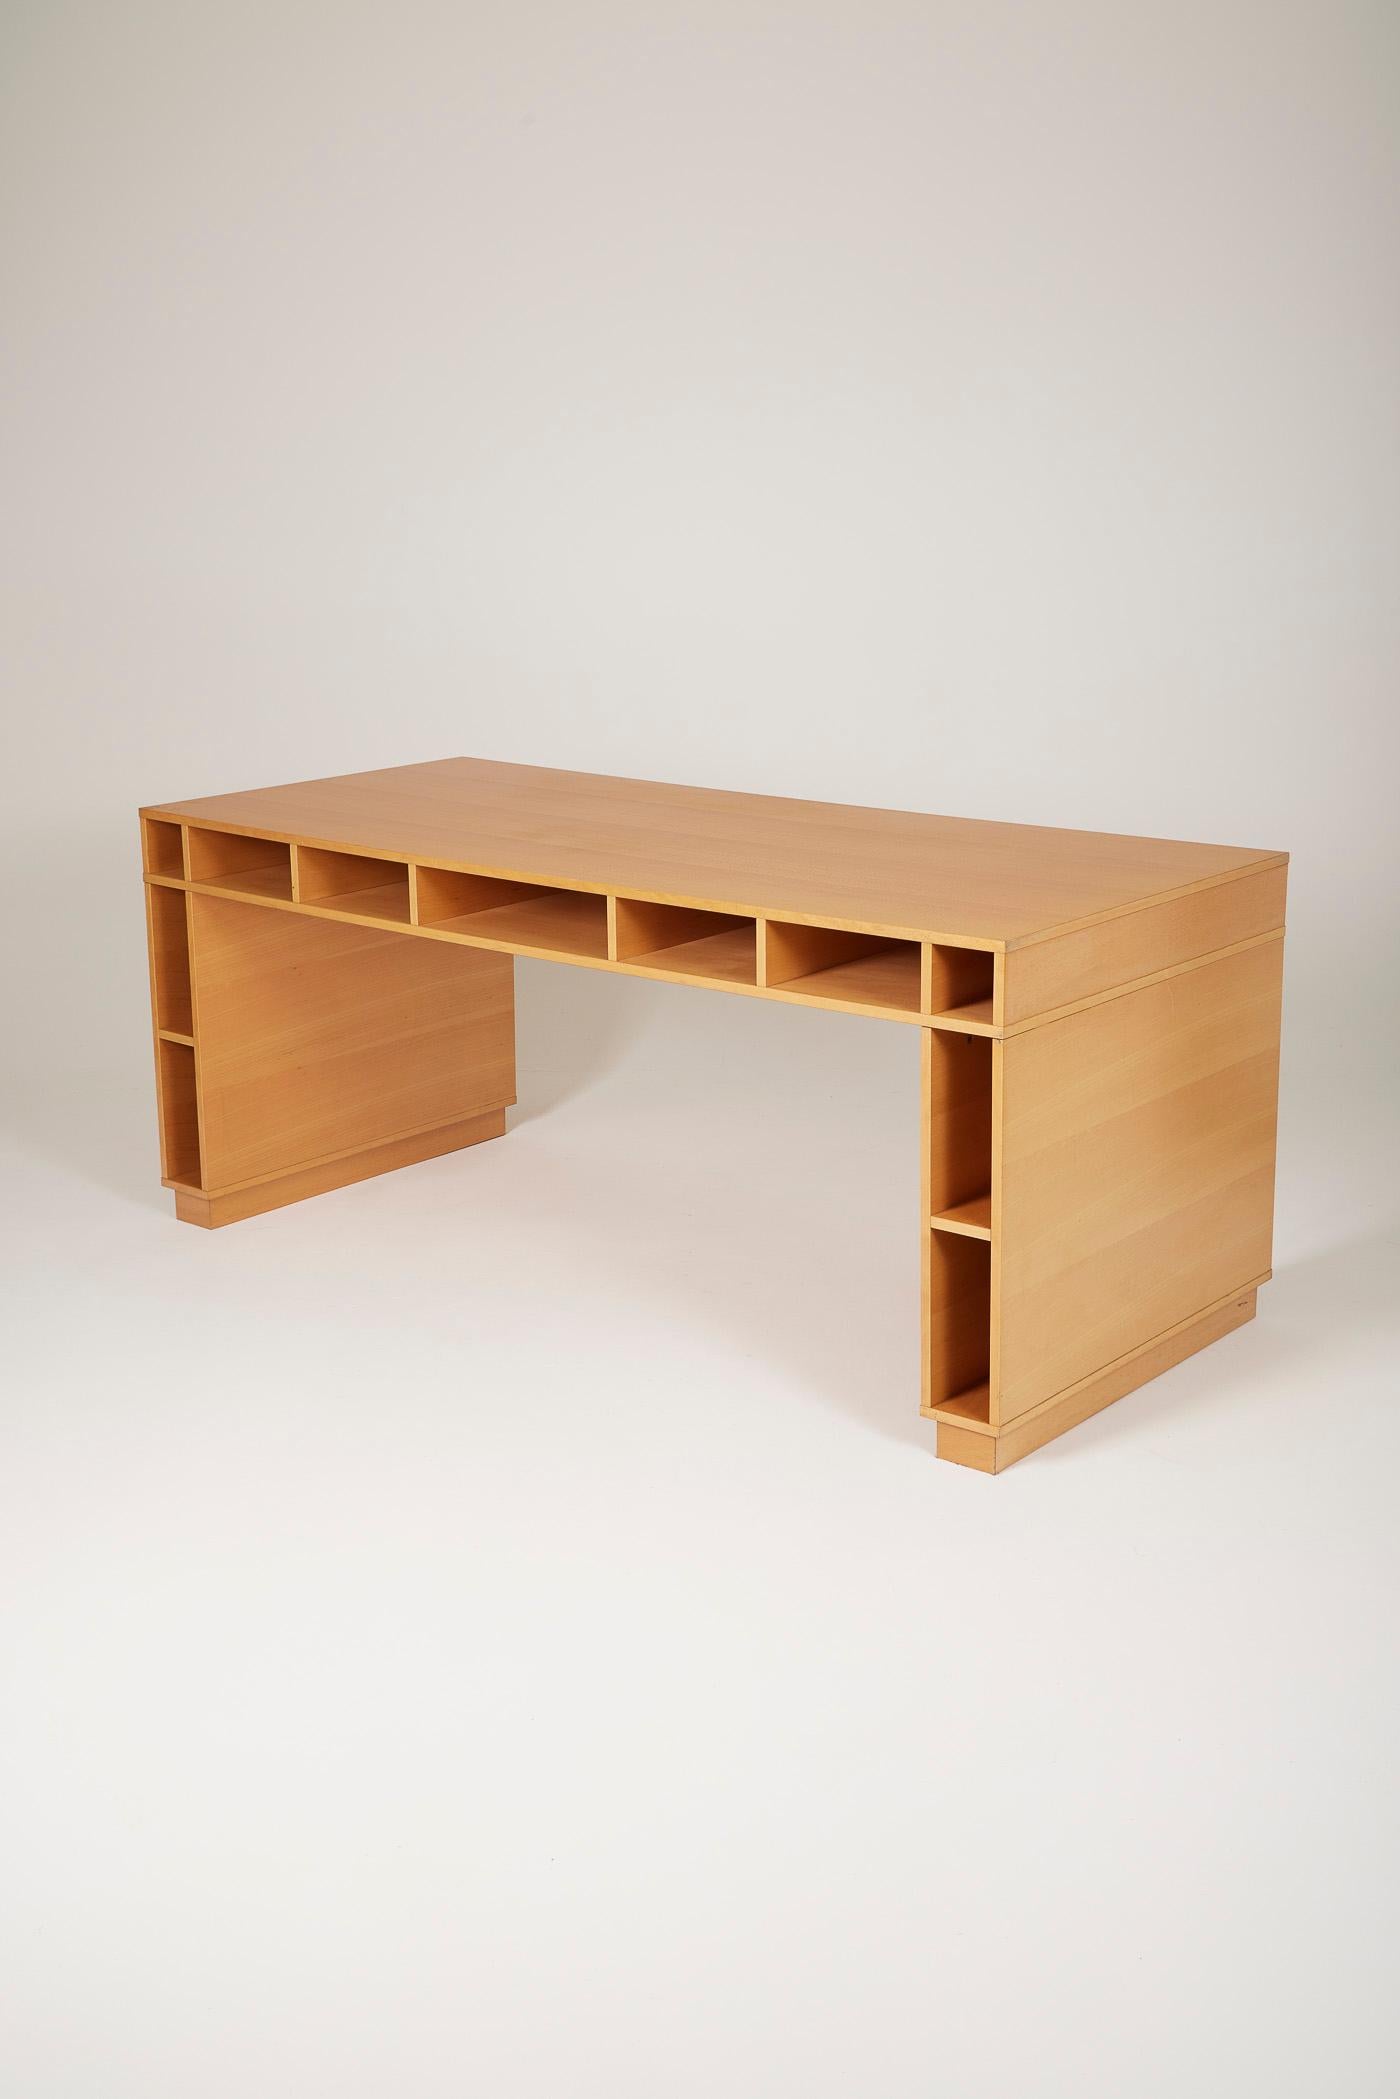 Großer Schreibtisch aus lackiertem Holz des spanischen Designers Ricardo Bofill für Habitat, 1980er Jahre. Der Schreibtisch verfügt über zahlreiche Ablagefächer in der gesamten Struktur. Sehr guter Zustand.
LP2034